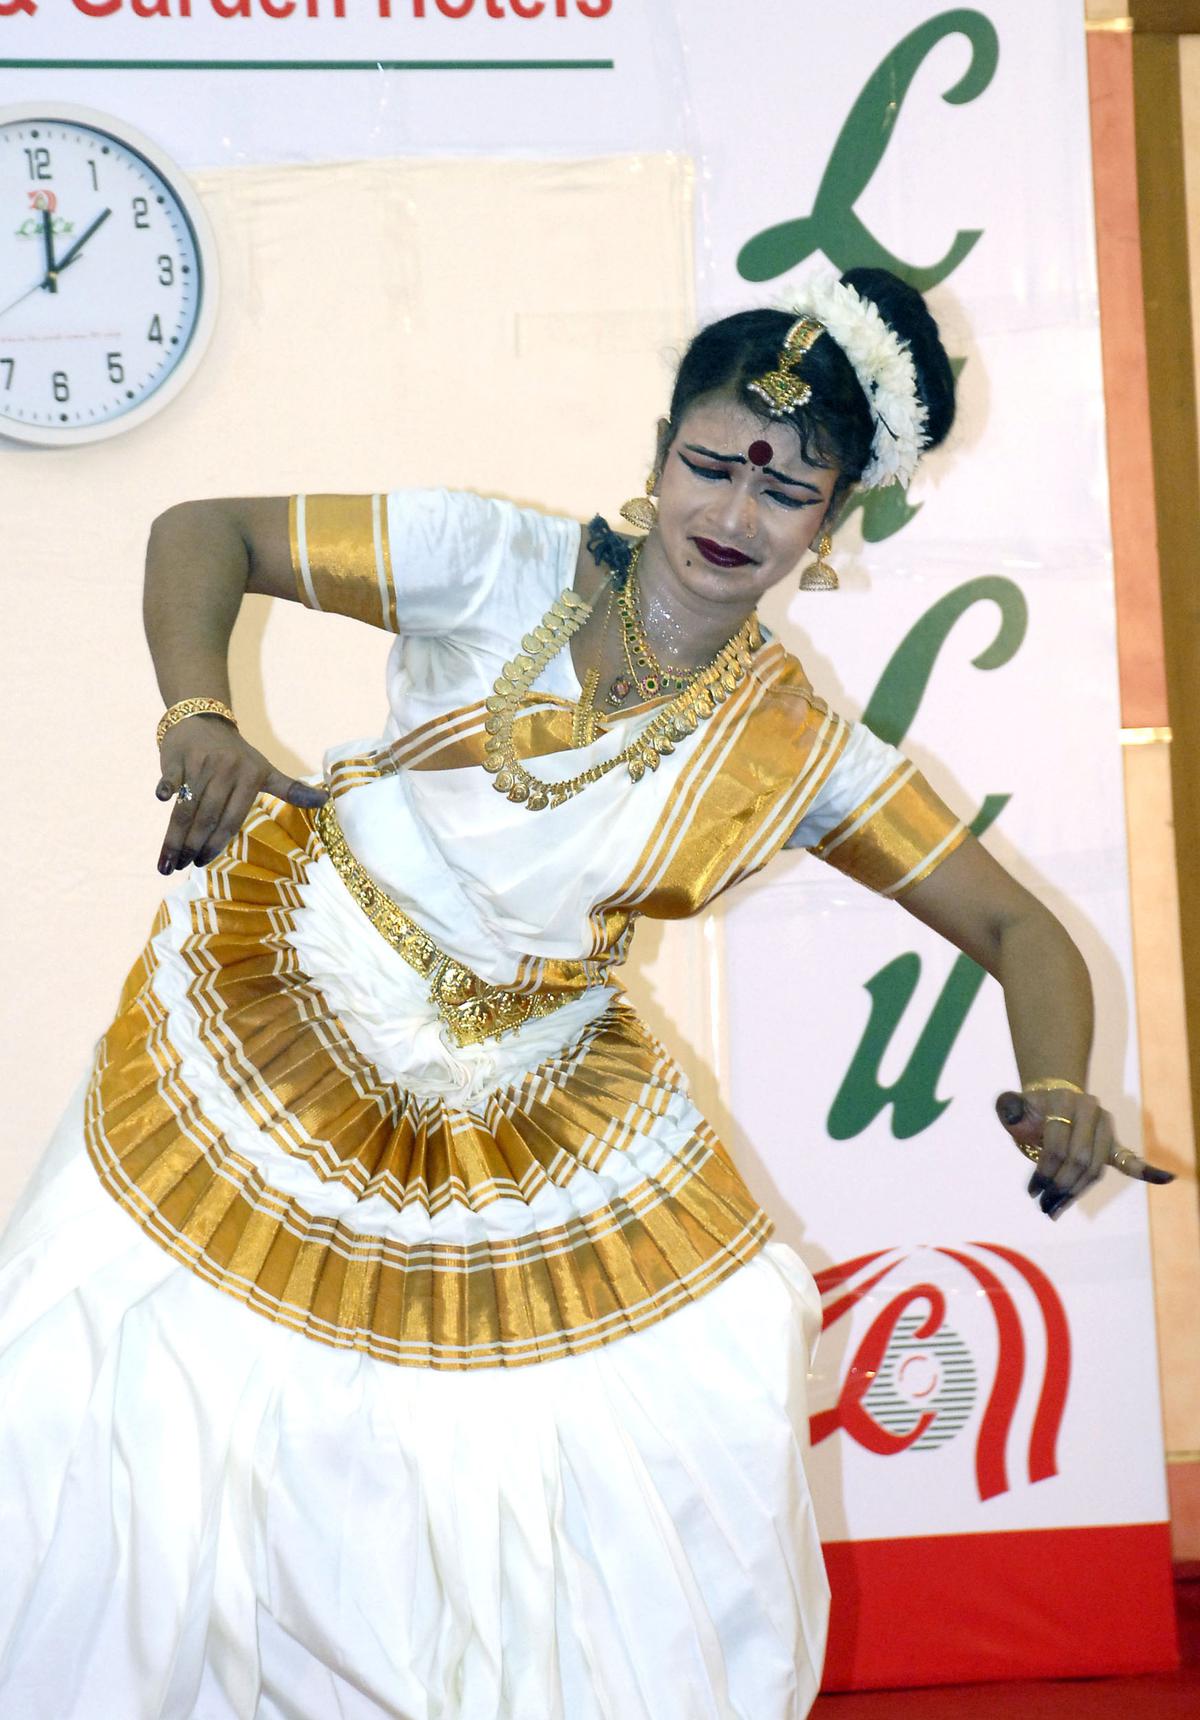 Kalamandalam Hemalatha attempting a World Record at Thrissur